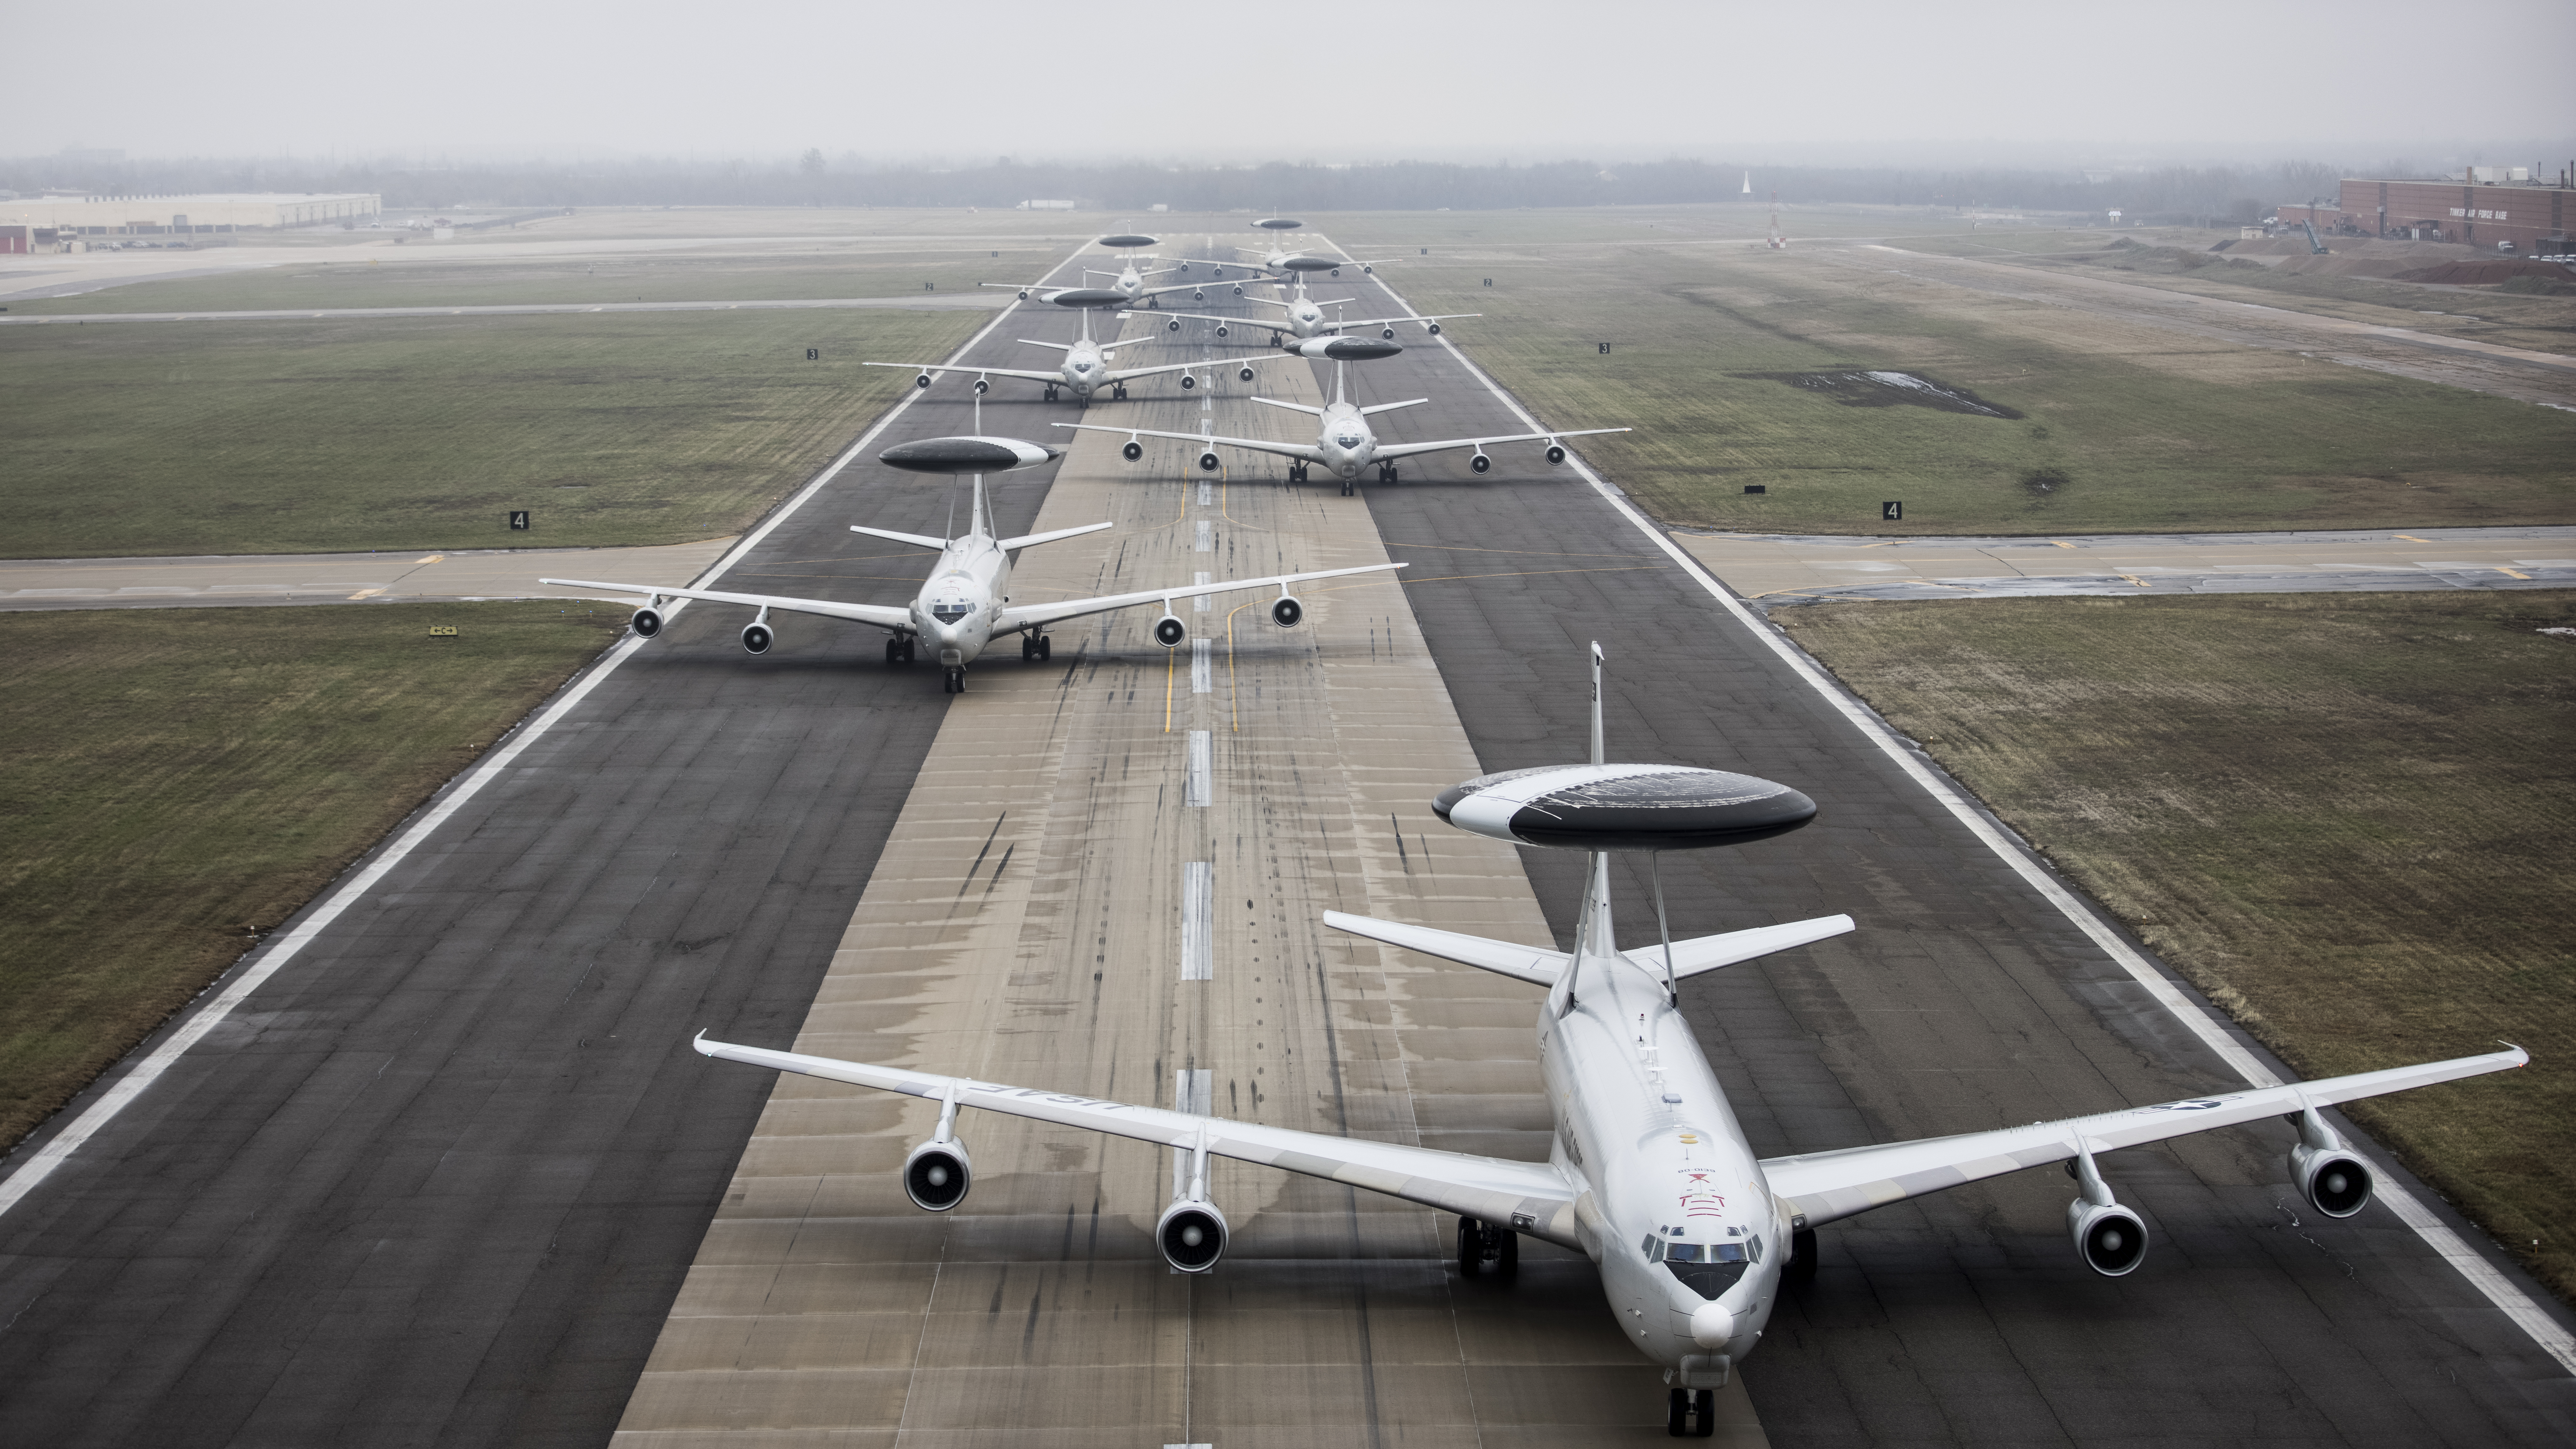 Siły powietrzne USA zademonstrowały jazdę na słoniu Boeinga E-3 Sentry, wynosząc w niebo kilka samolotów jednocześnie